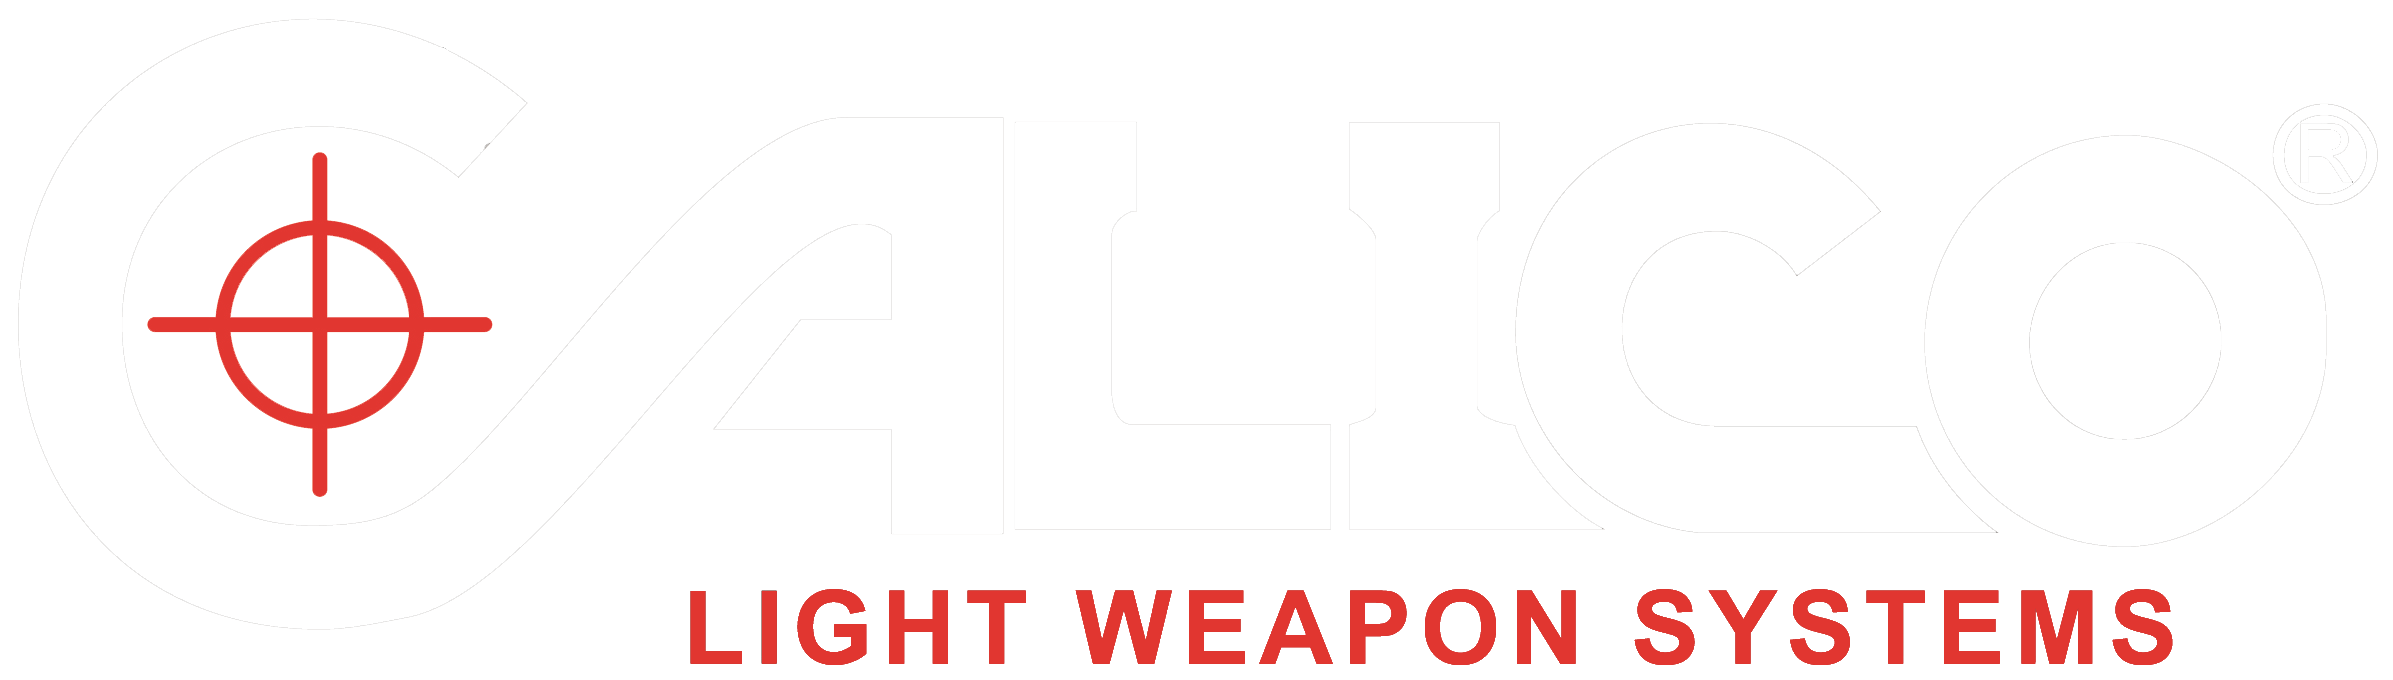 Calico Firearms